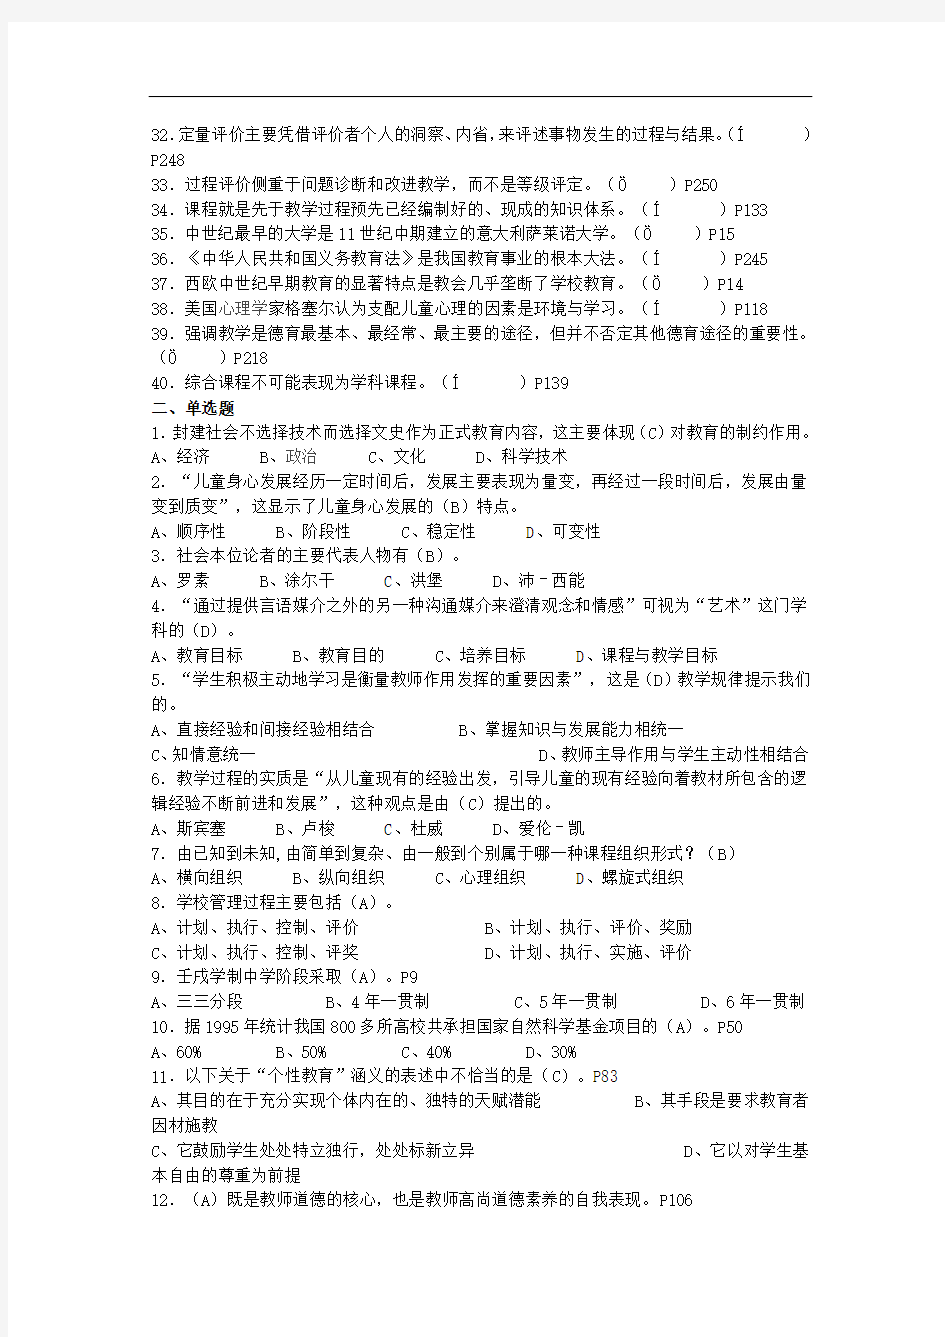 2014年福建省教师招聘考试教育综合--模拟题及答案解析 (14)